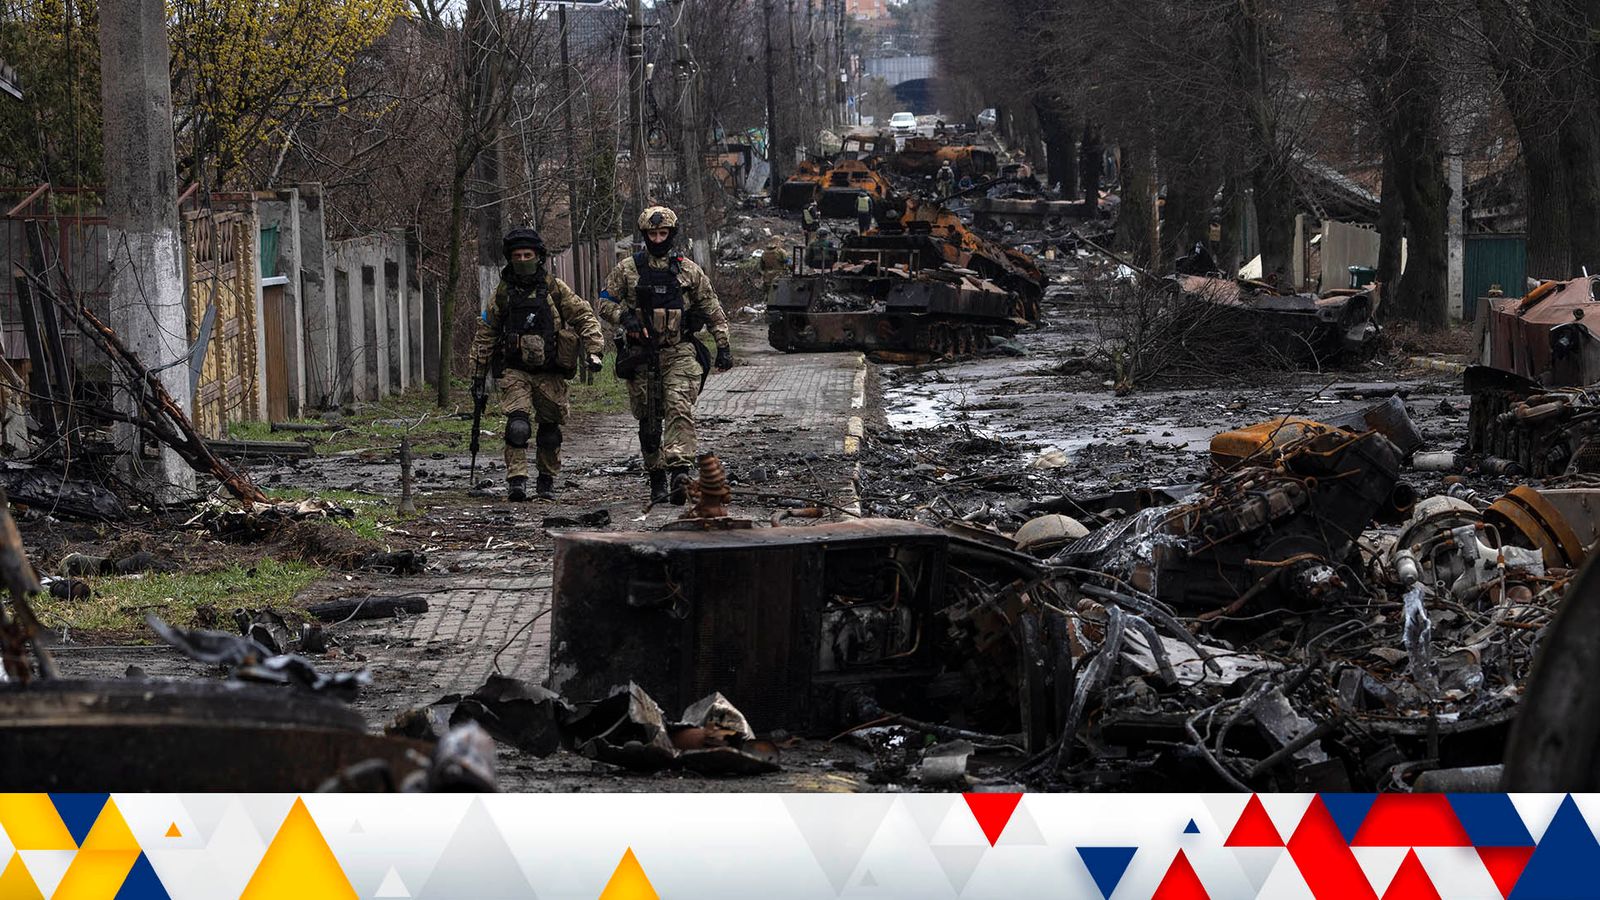 Guerre d’Ukraine : Des soldats russes accusés d’avoir perpétré un « génocide » à Bucha alors que Zelenskyy affirme que « le mal concentré a visité notre pays » |  Nouvelles du monde